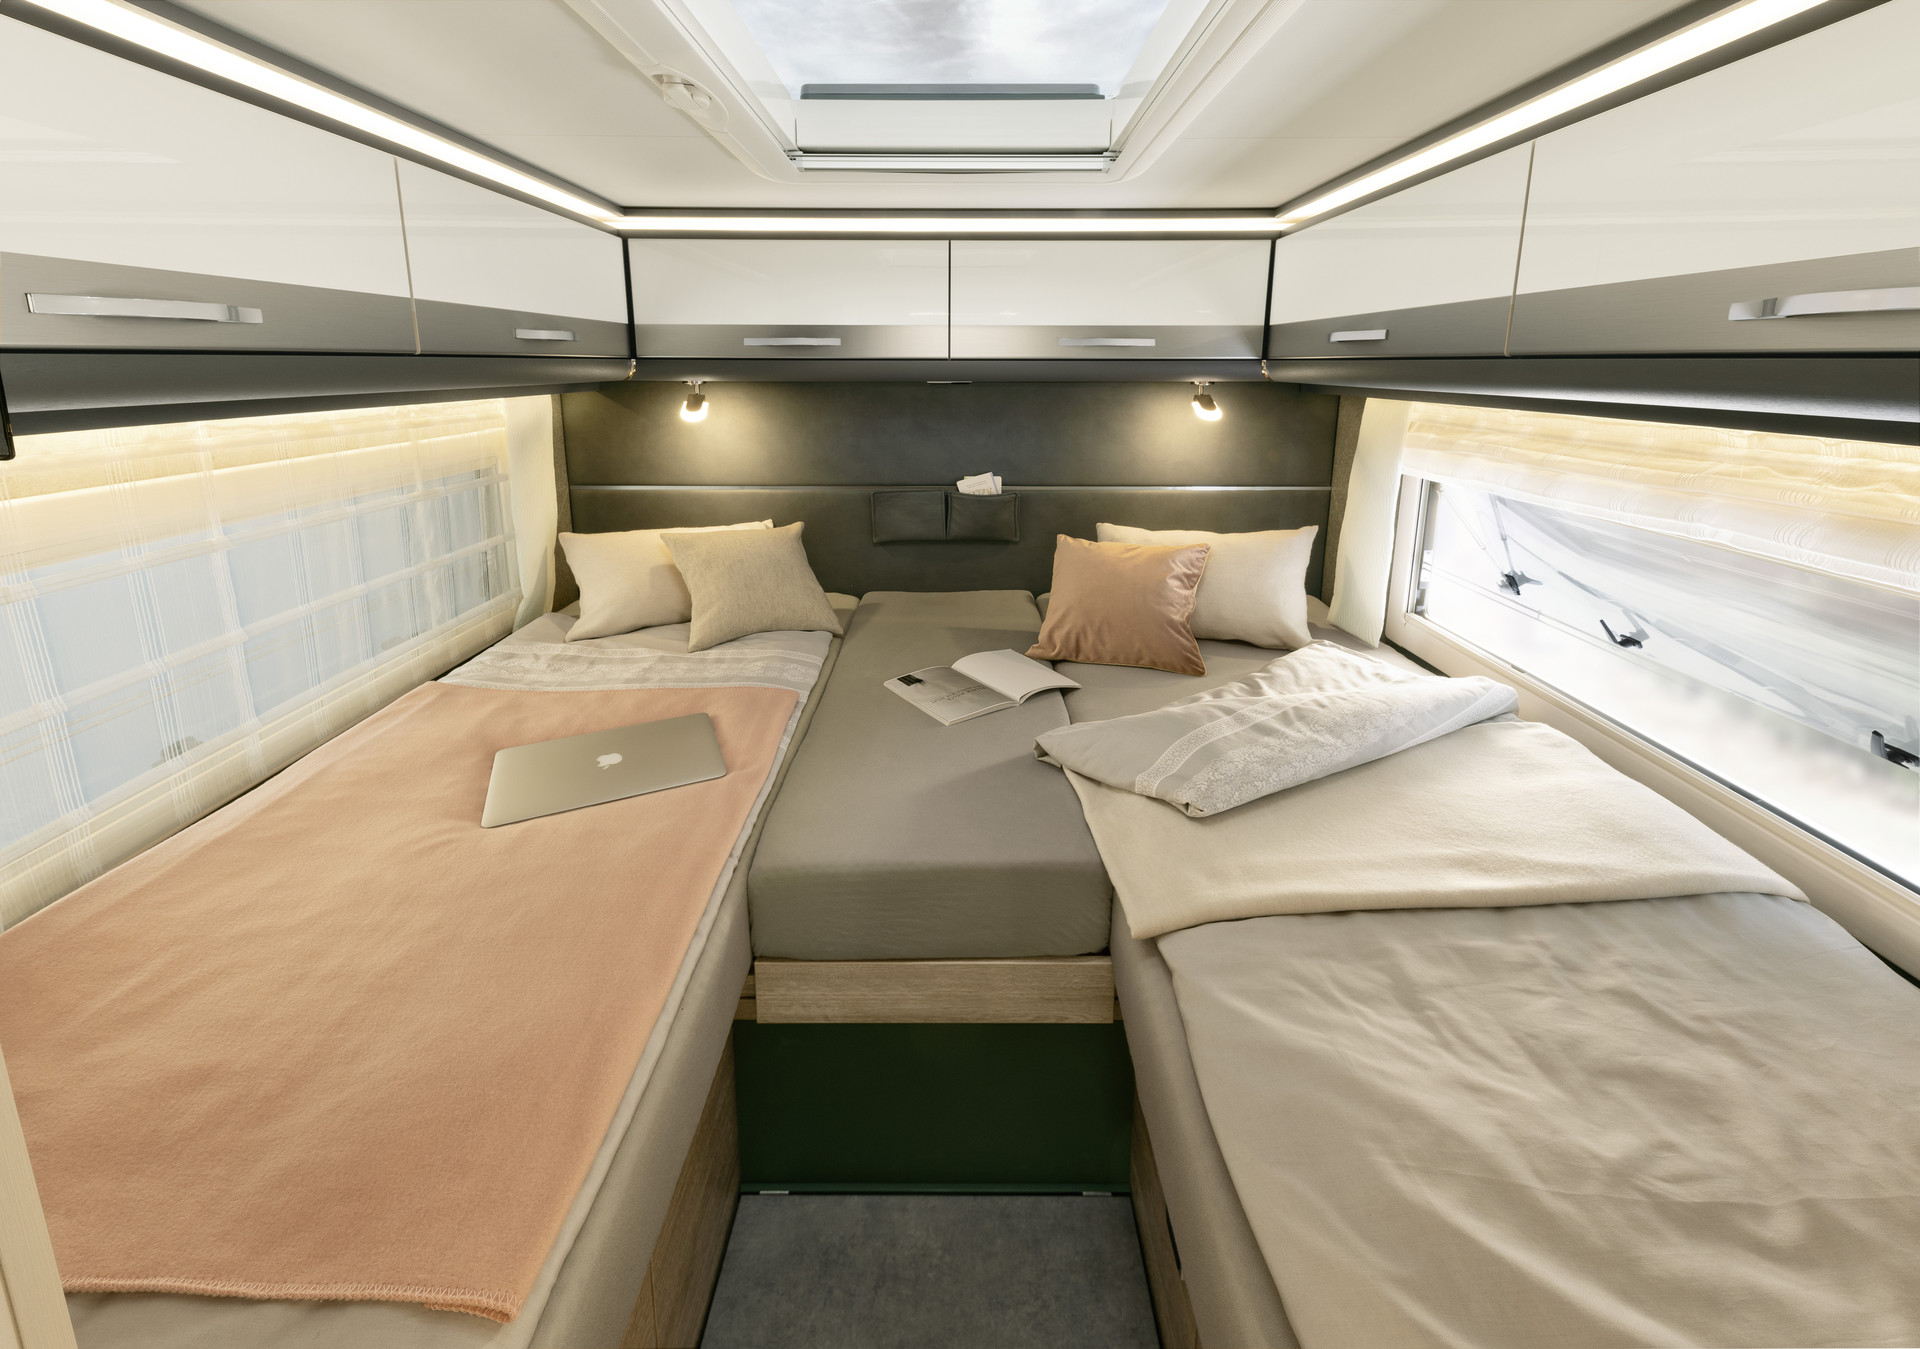 Łóżka pojedyncze mają wymiary 200 x 80 cm lub 195 x 80 cm. Można je przebudować do wielkiej powierzchni do spania zajmującej całą szerokość pojazdu. • A 9000-2